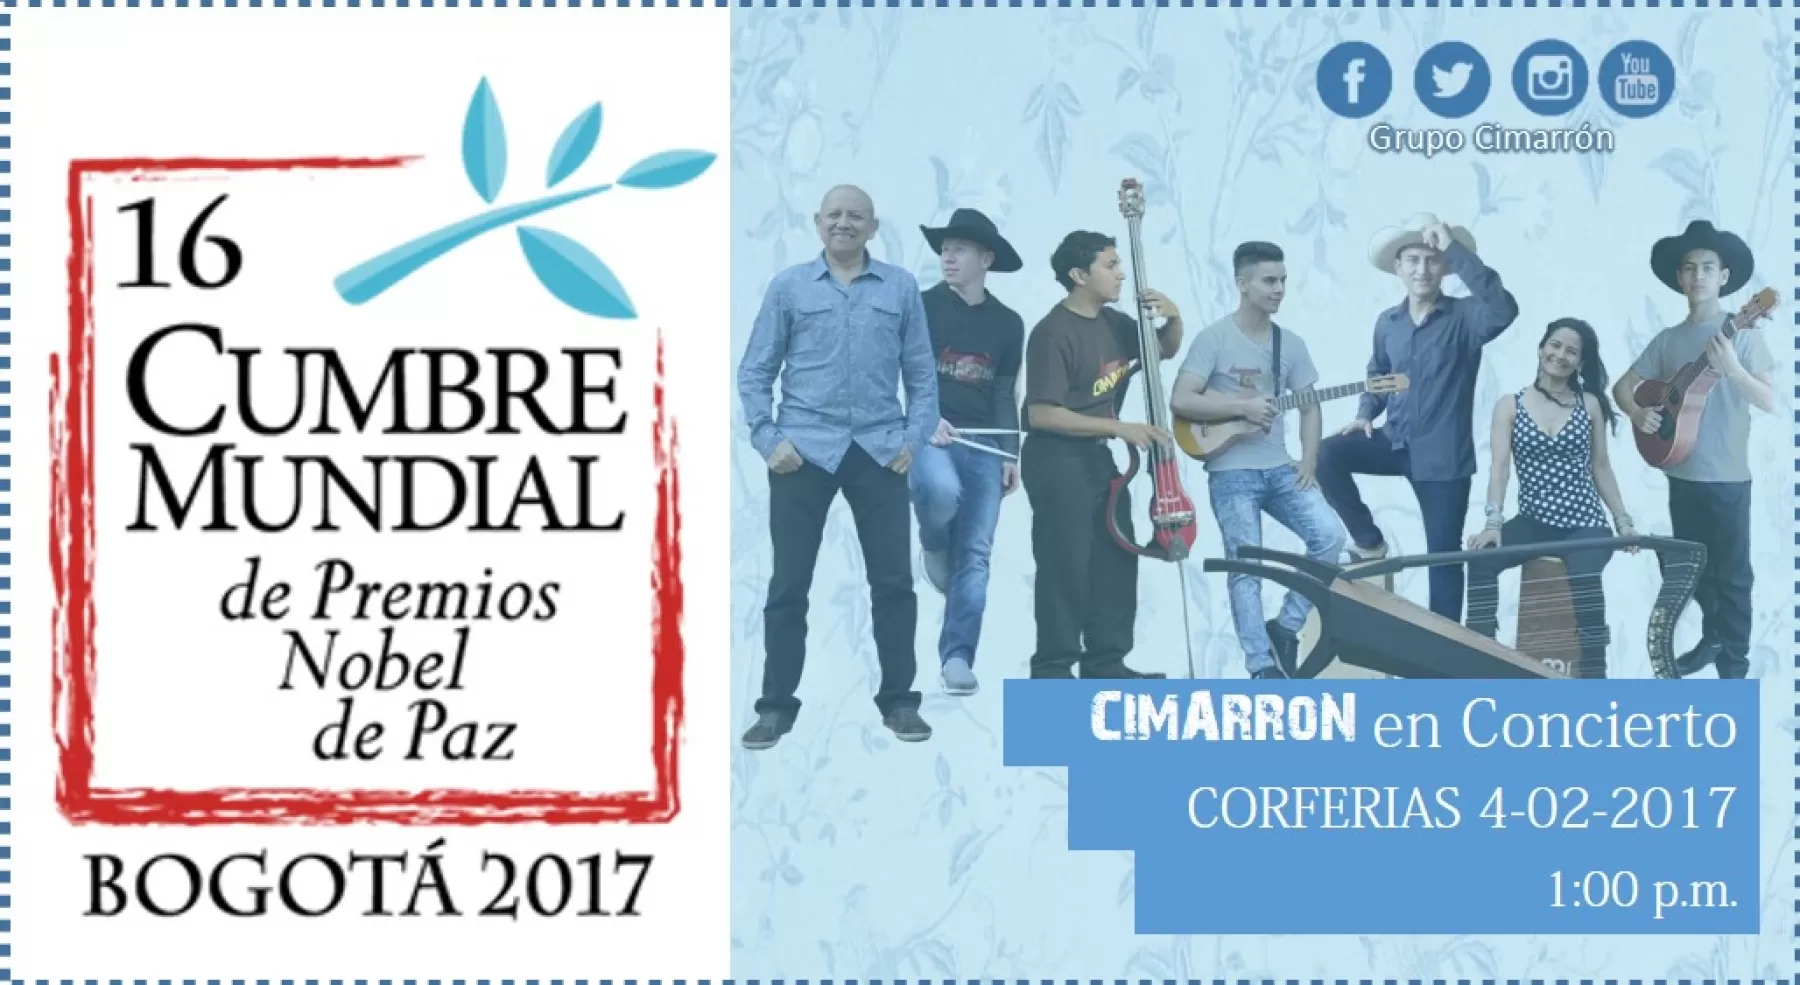 Cimarrón en la cumbre mundial de premios nobel que se realiza en Bogotá, en Corferias este 4 de febrero a partir de las 1 pm.